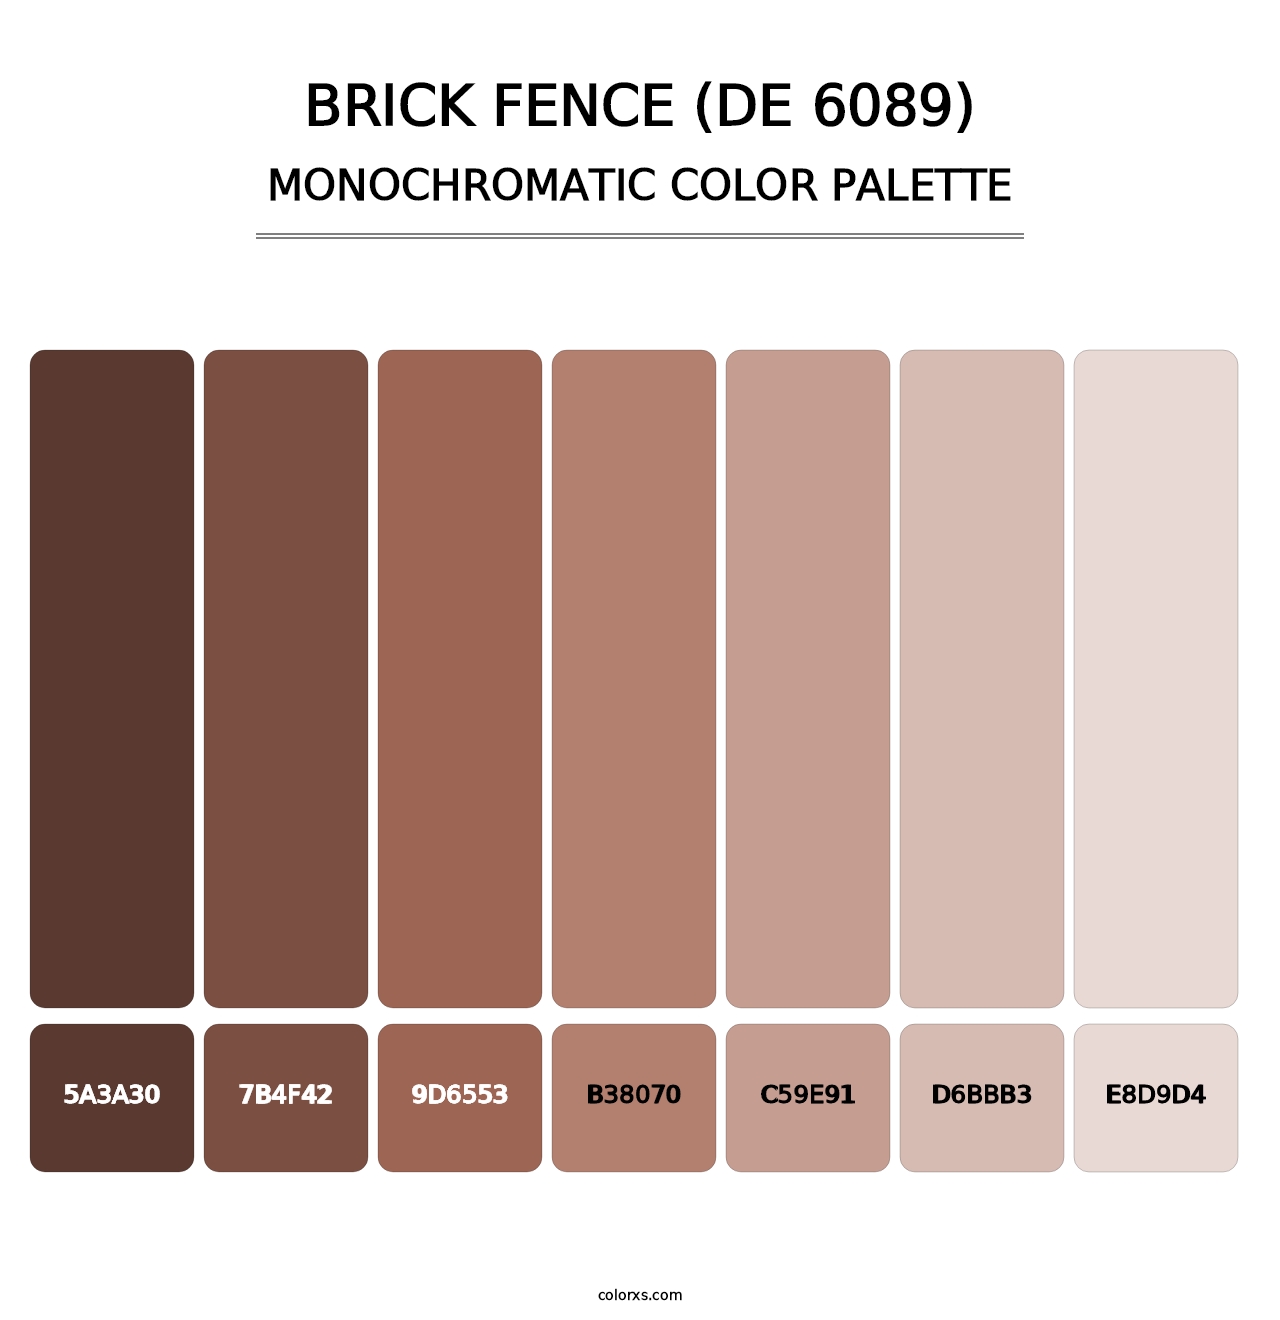 Brick Fence (DE 6089) - Monochromatic Color Palette